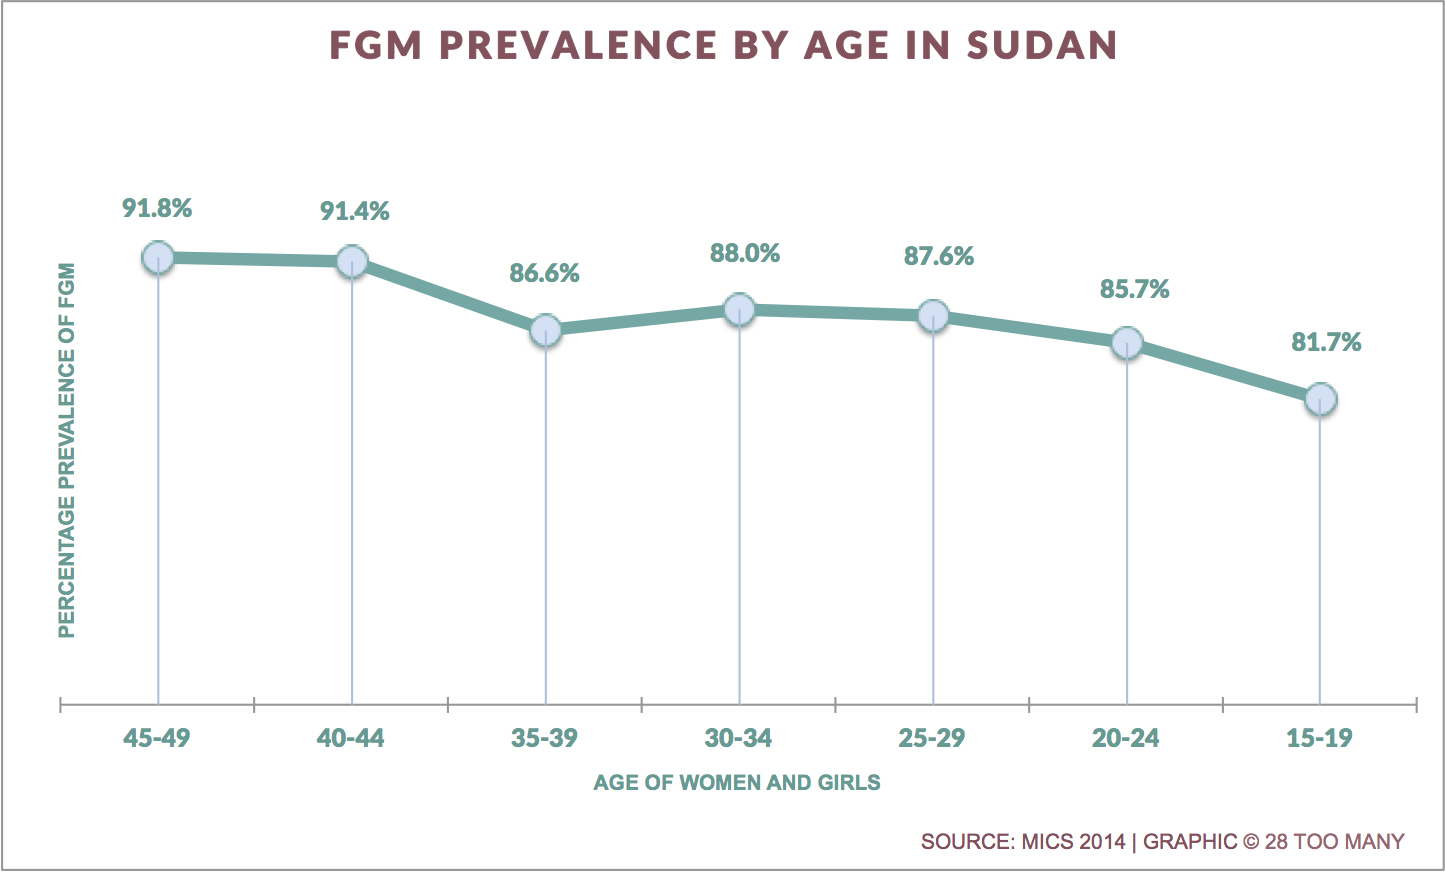 Trends in FGM Prevalence in Sudan